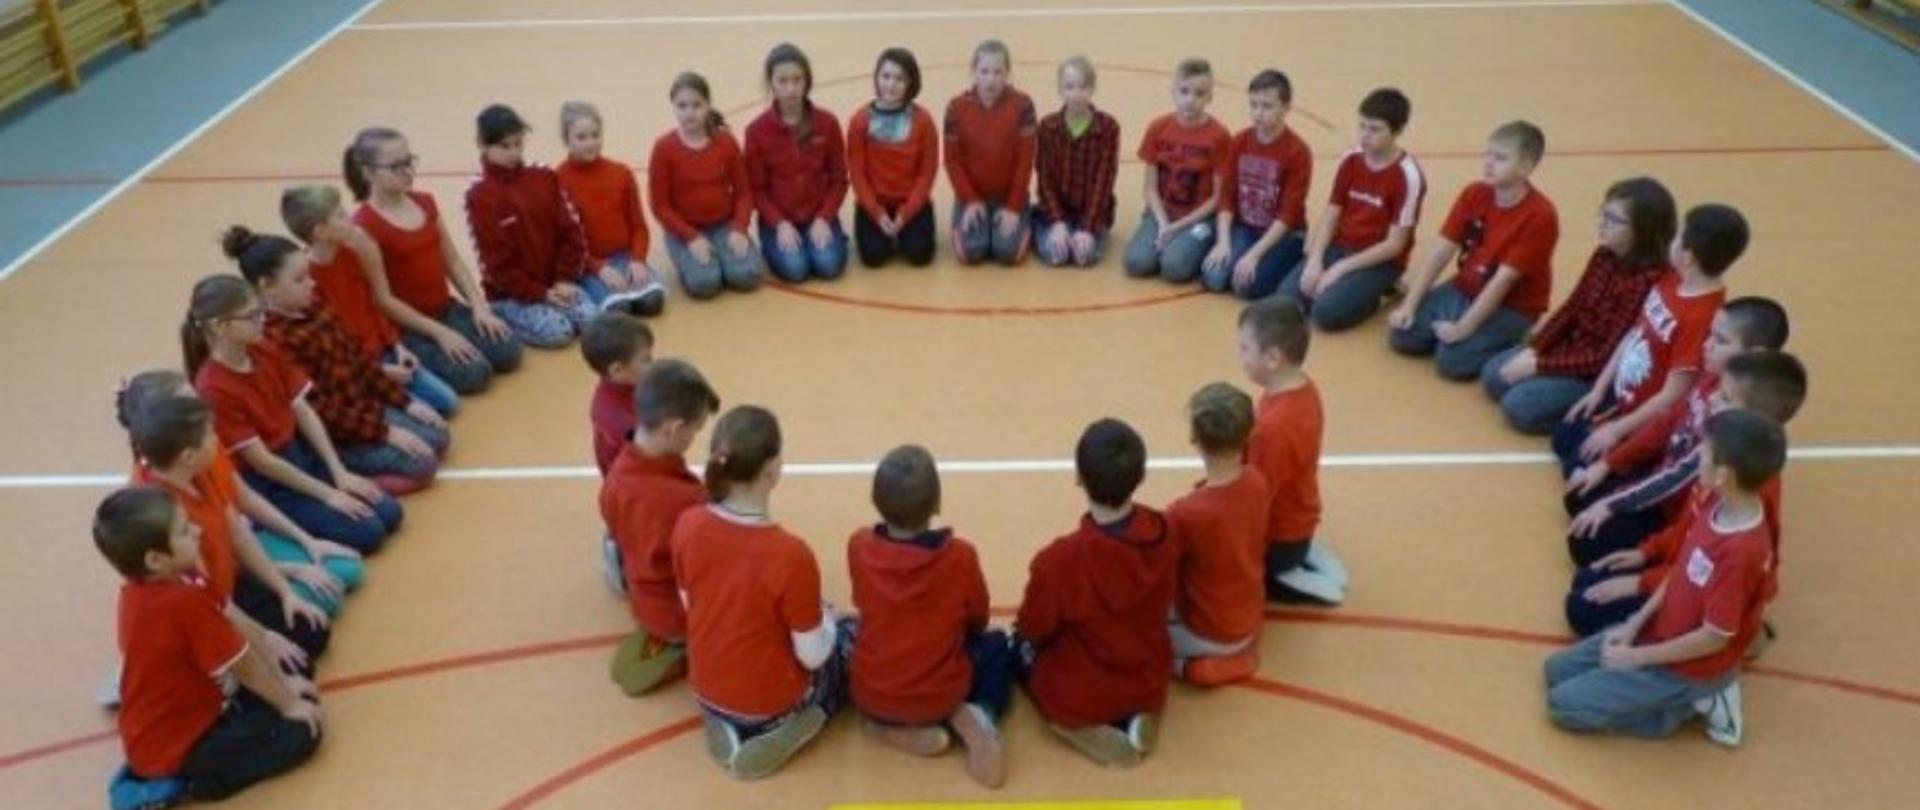 Dzieci w czerwonych koszulkach siedzą na podłodze tworząc kształt logo Polskiej Pomocy. Poniżej jest napis „polska pomoc”.